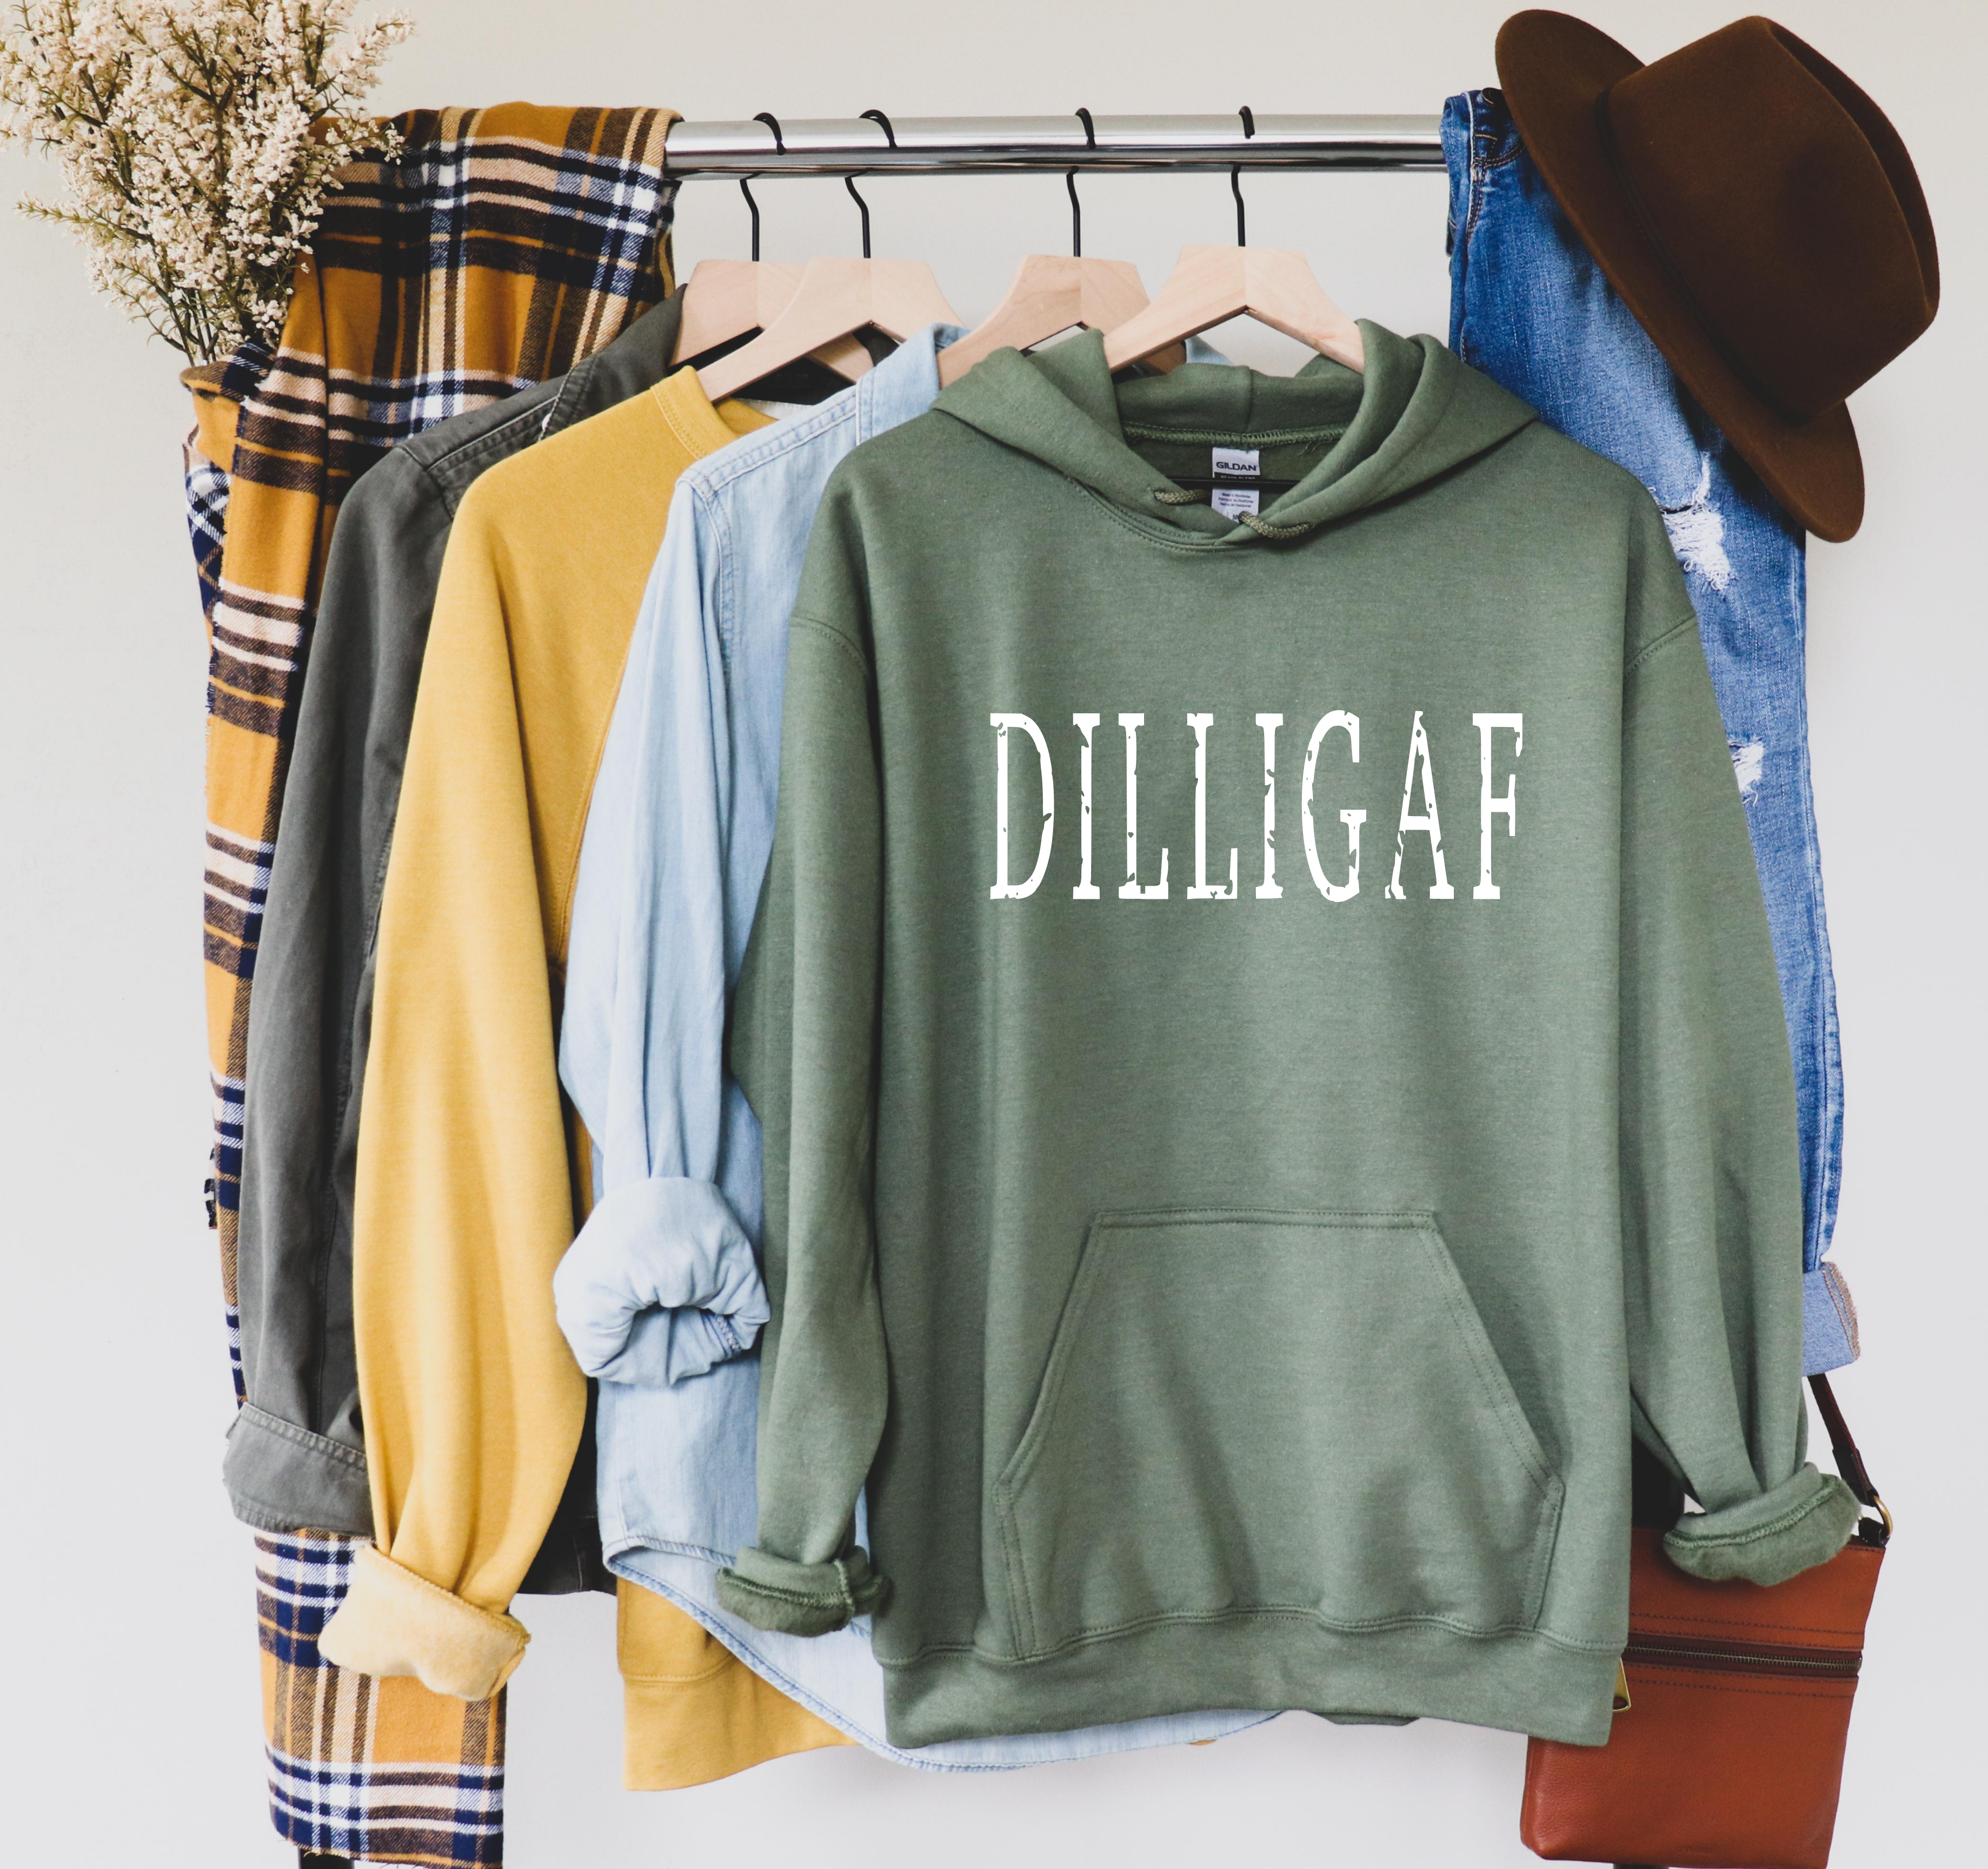 DILLIGAF Sweatshirt